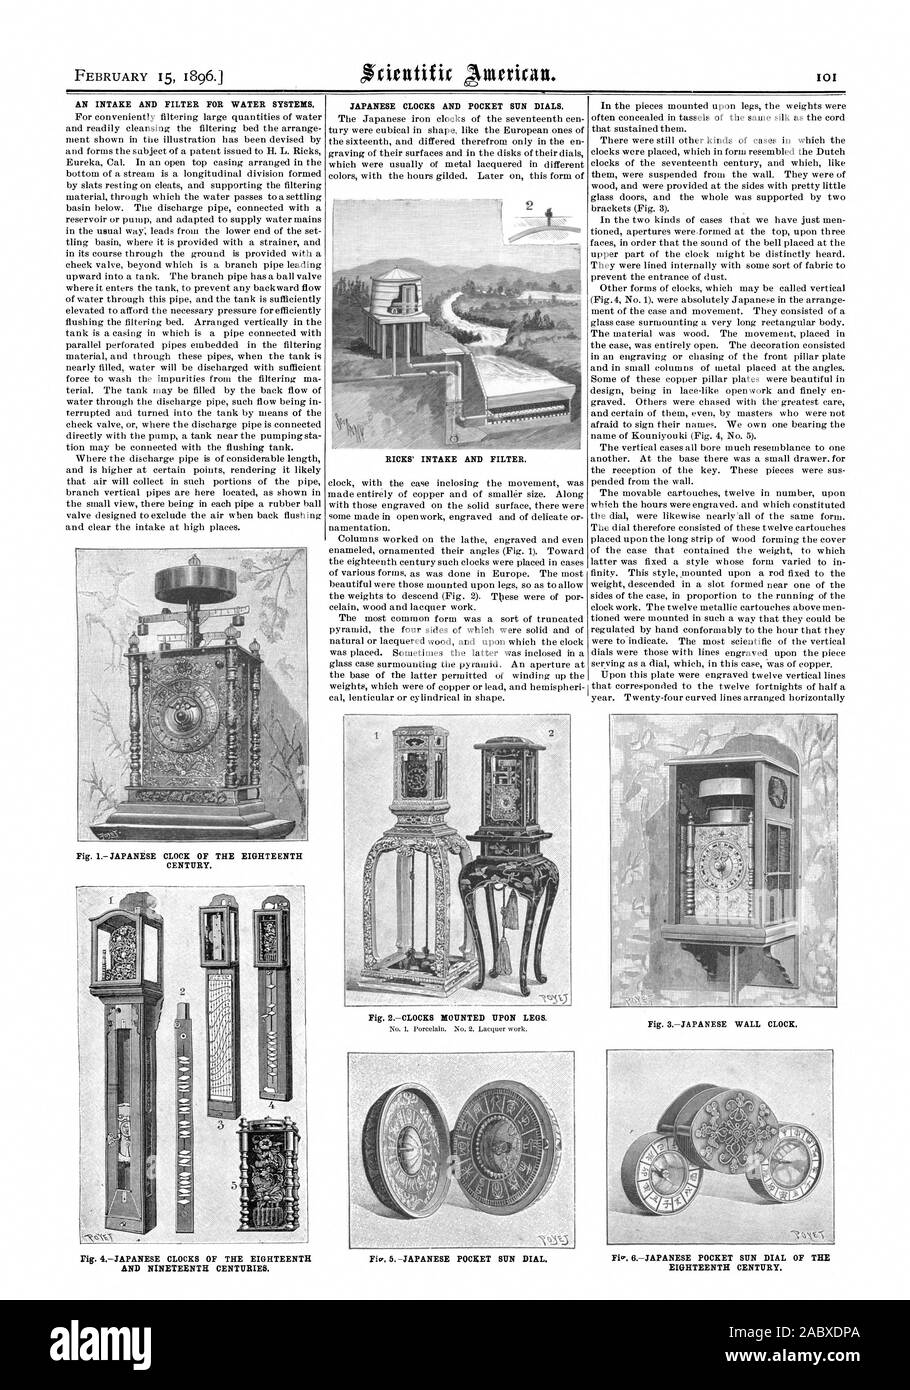 El 15 de febrero de 1896. Una ingesta y filtro para sistemas de  abastecimiento de agua.